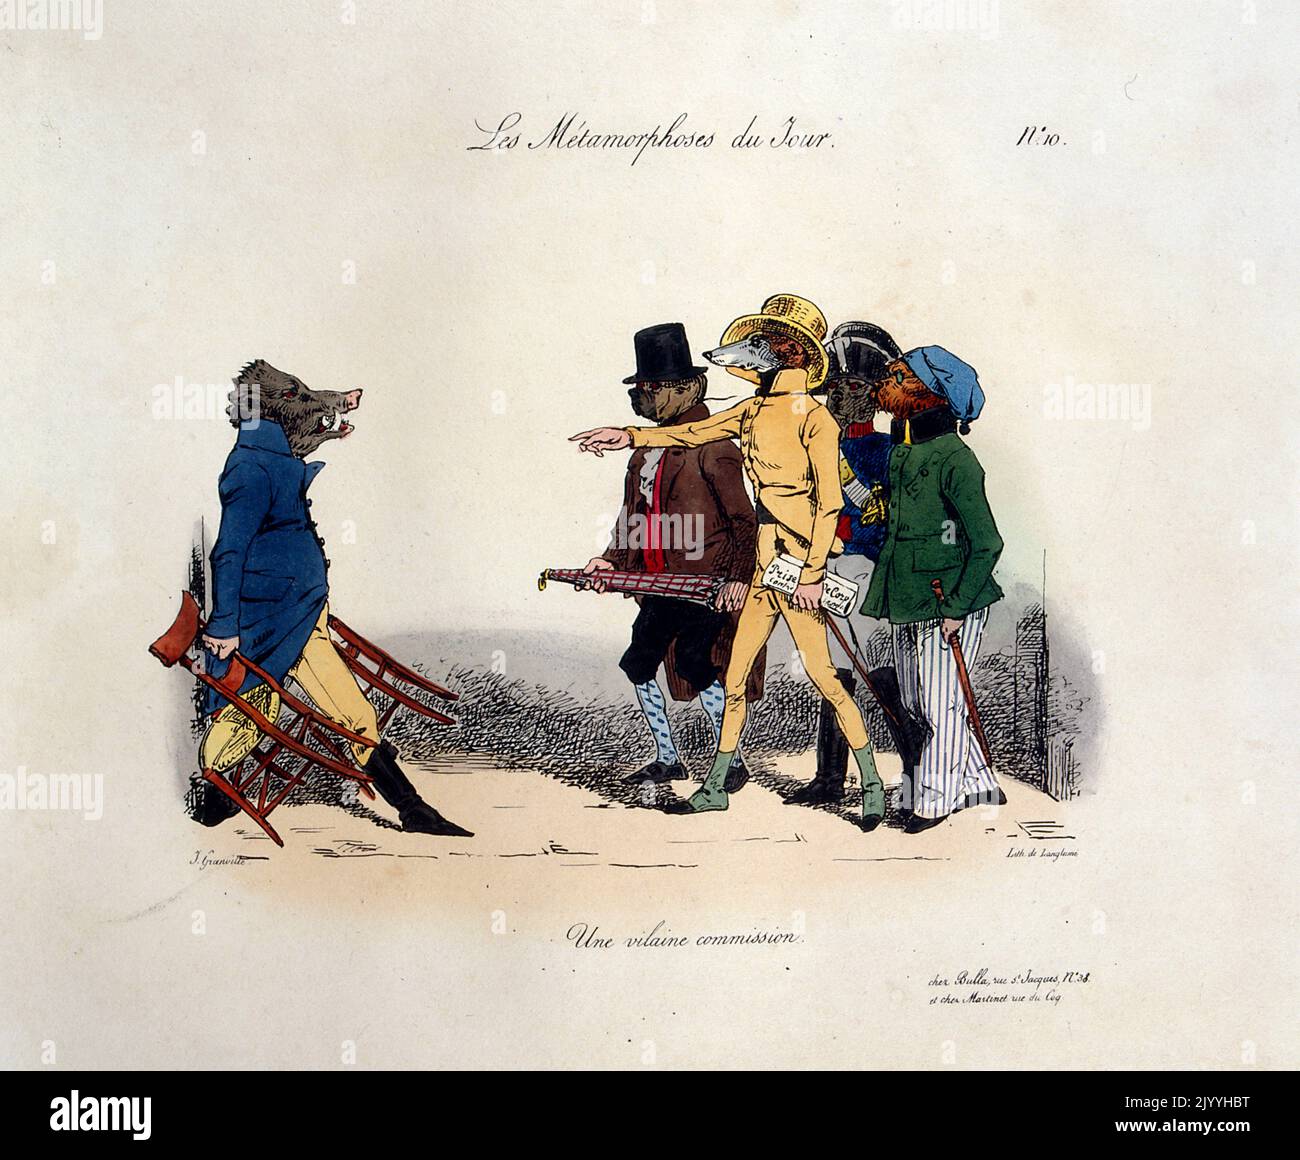 Immagine satirica colorata di una scena di animali in abbigliamento umano di Pierre Langlume (1790-1830), artista francese. Foto Stock